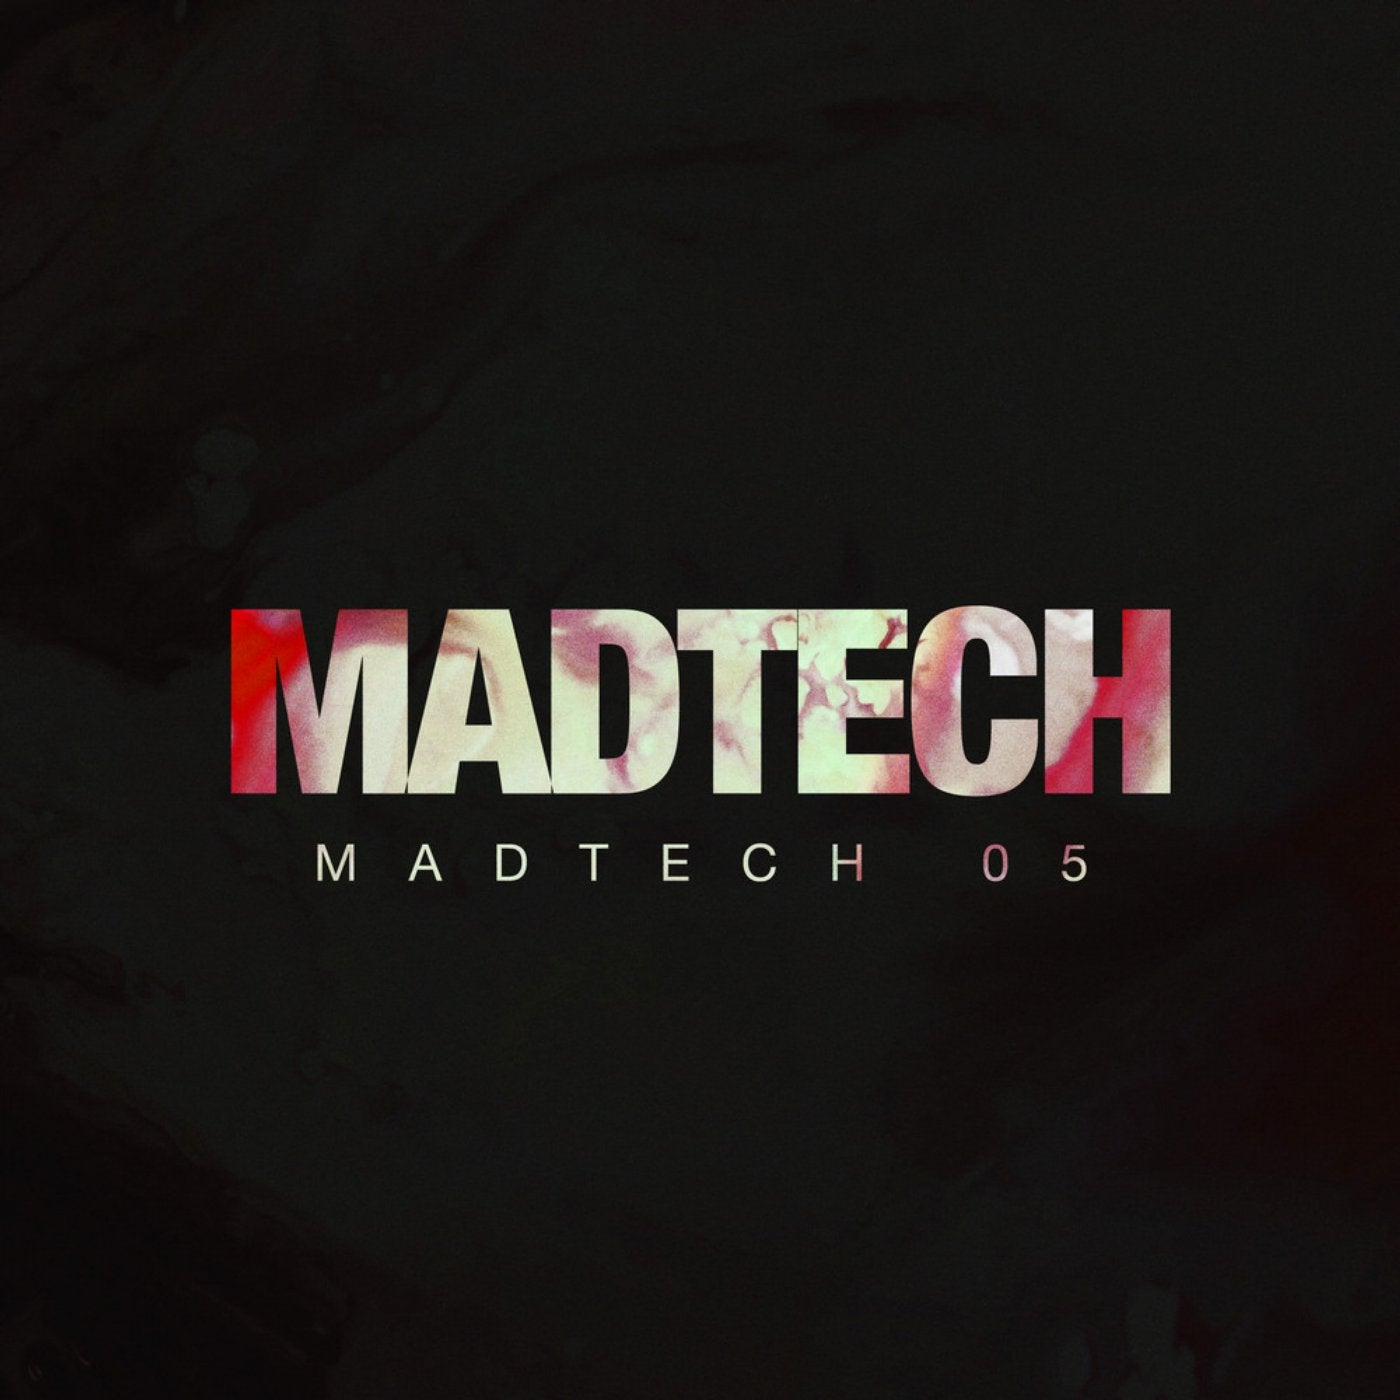 Madtech 05